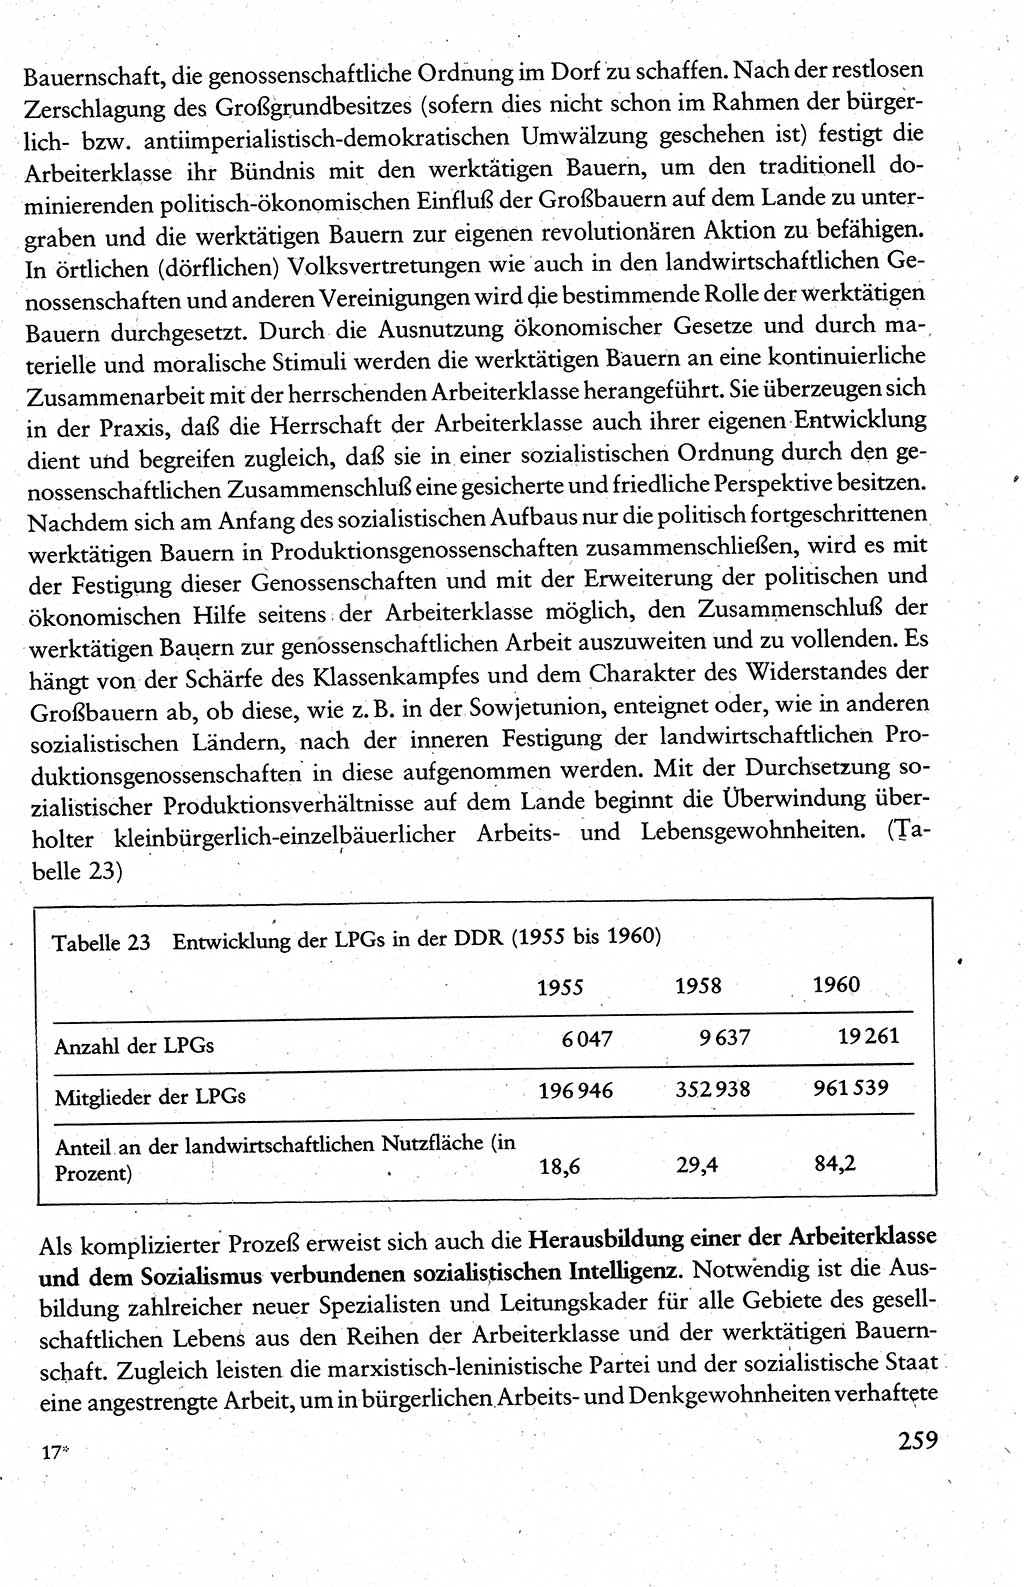 Wissenschaftlicher Kommunismus [Deutsche Demokratische Republik (DDR)], Lehrbuch für das marxistisch-leninistische Grundlagenstudium 1983, Seite 259 (Wiss. Komm. DDR Lb. 1983, S. 259)